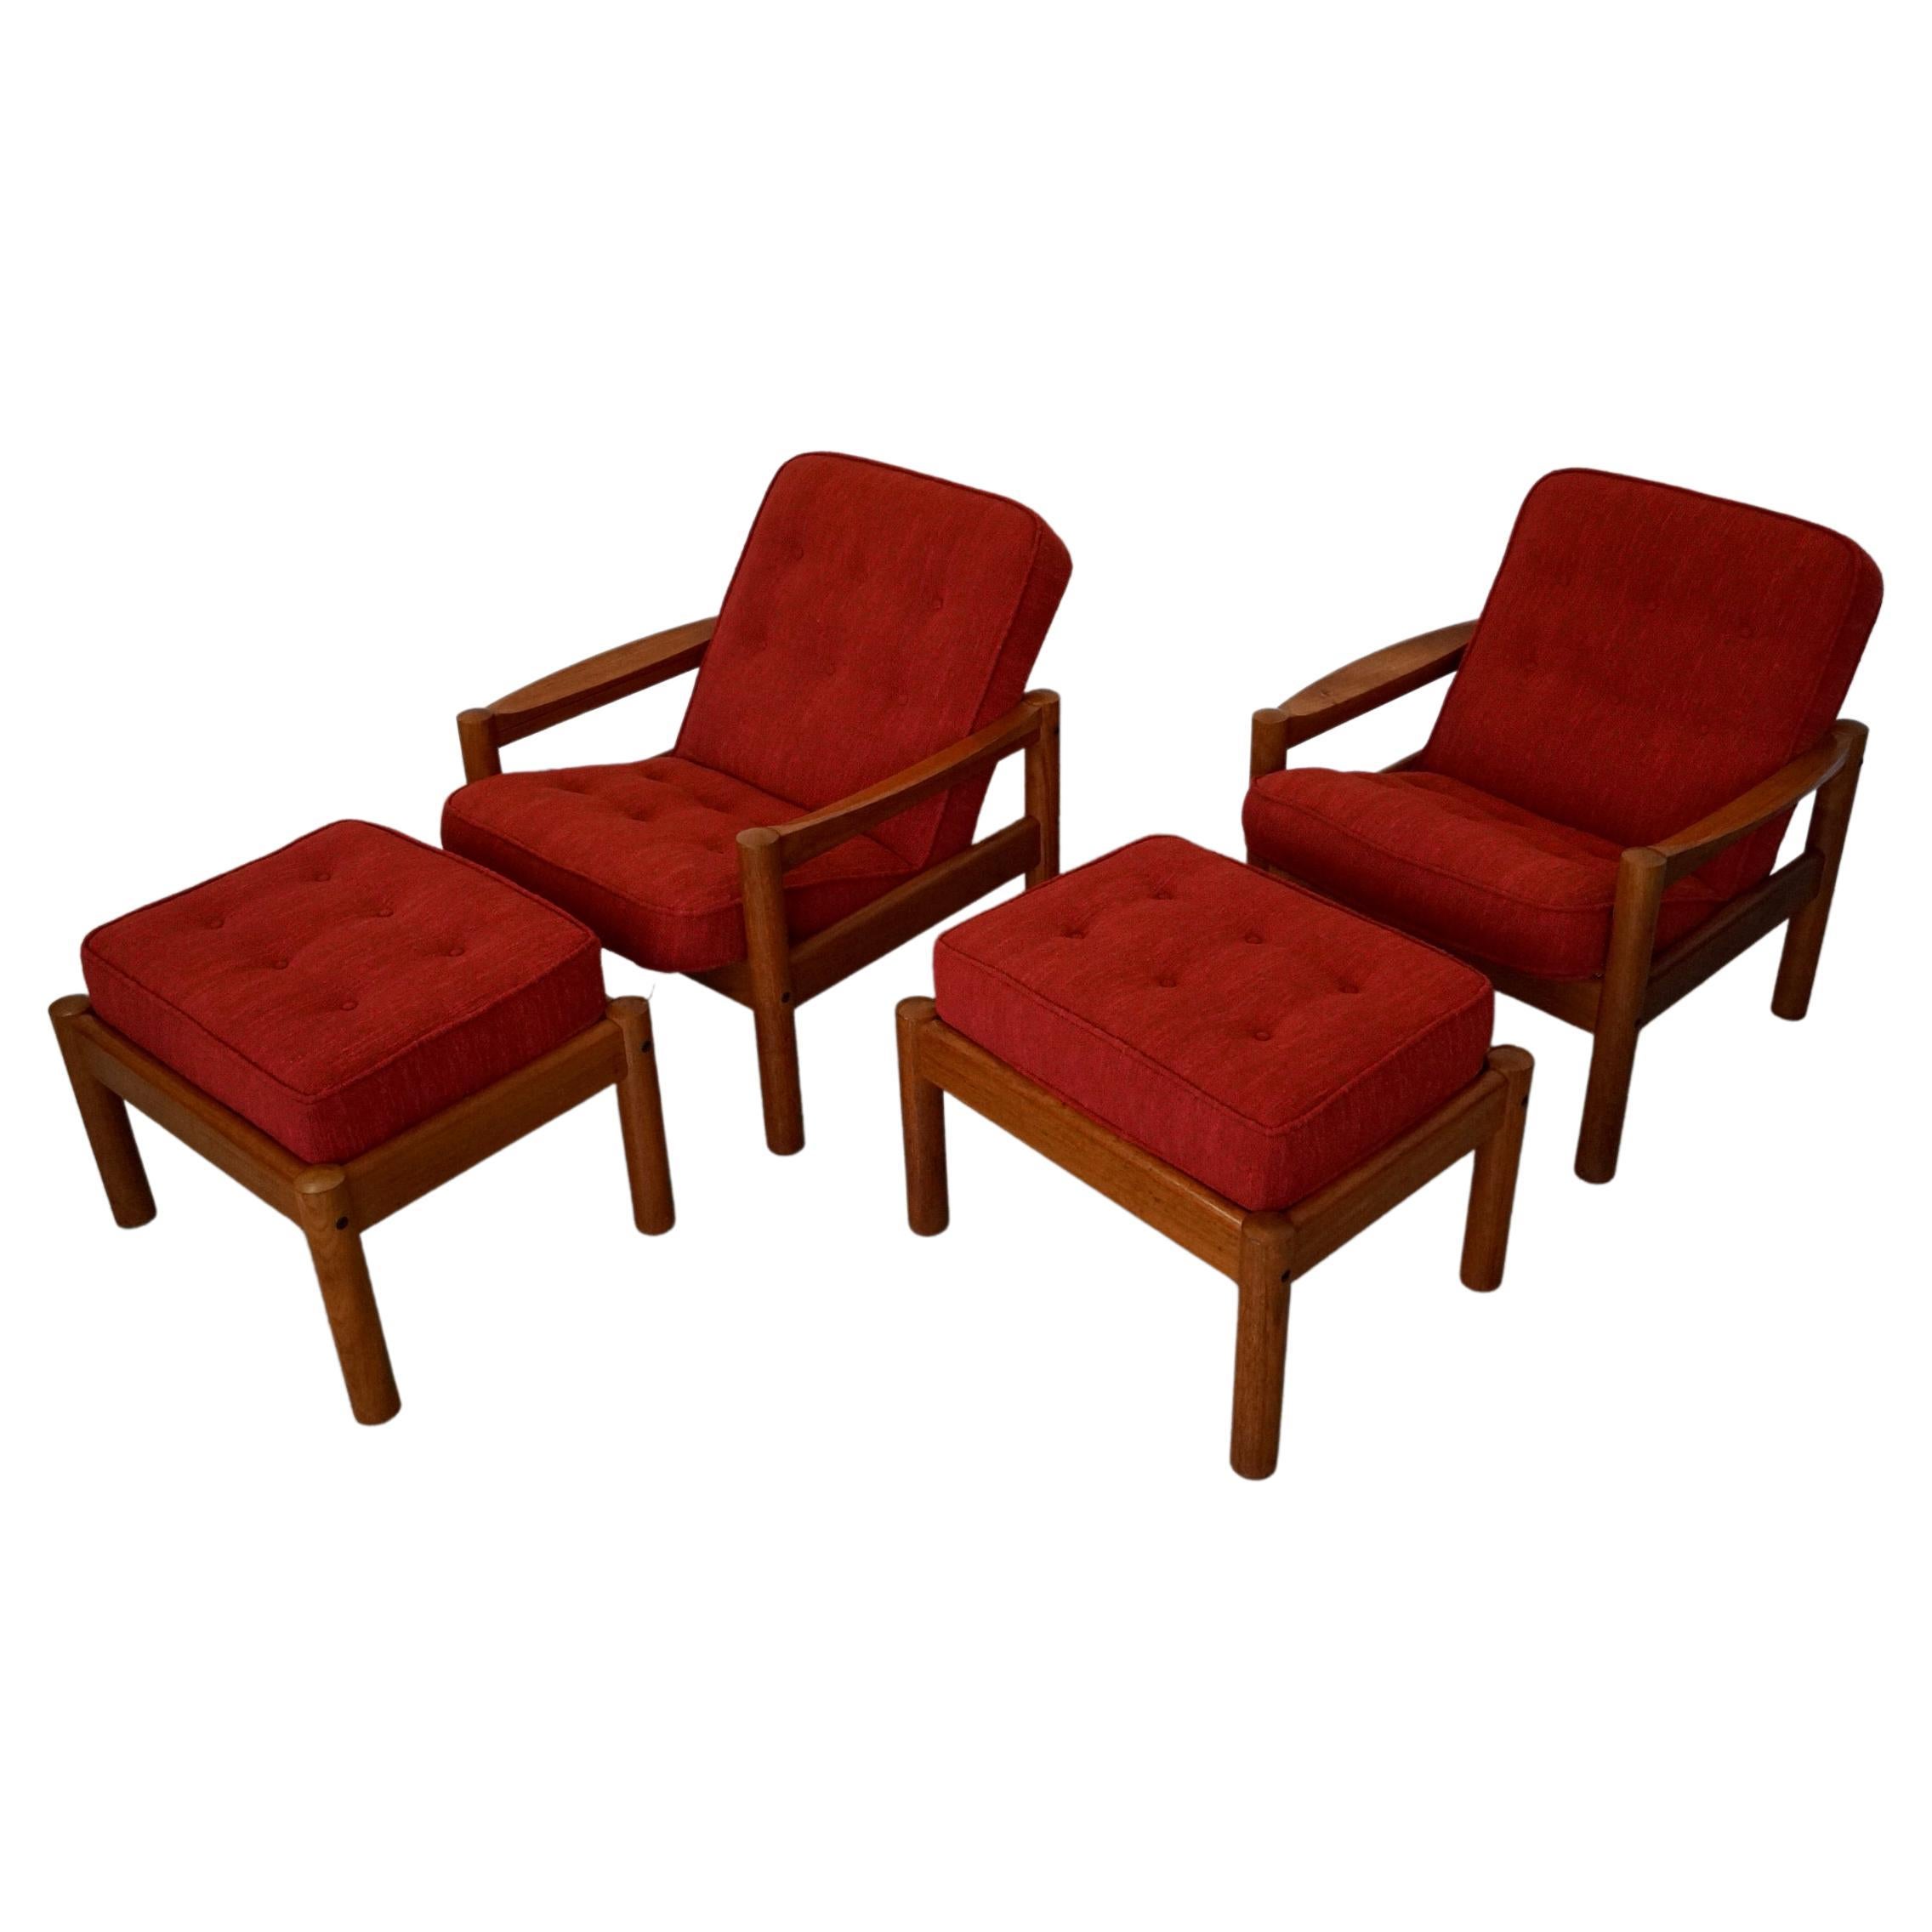 Paire de chaises longues vintage Midcentury Modern à vendre. Ils ont été fabriqués dans les années 1970 et ont été professionnellement retapissés dans un tissu rouge nubby correct pour l'époque. Ils ont un cadre en teck massif et sont accompagnés